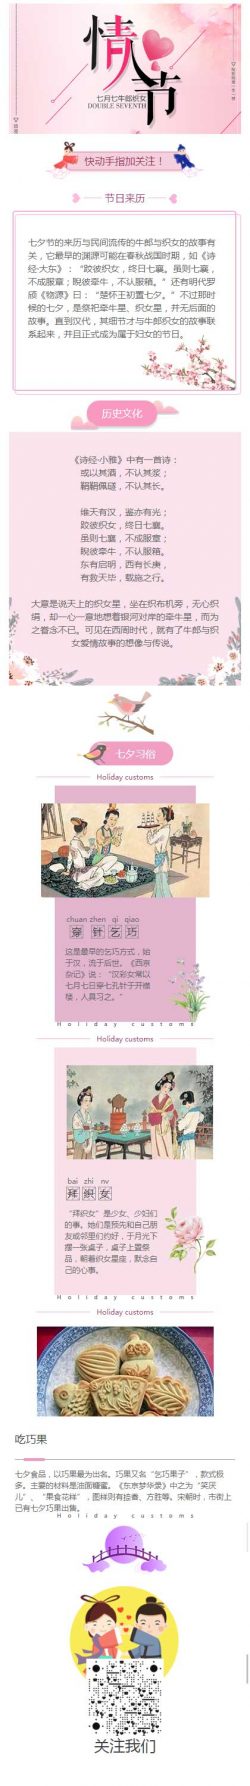 七夕节的来历与民间流传的牛郎与织女的故事有关